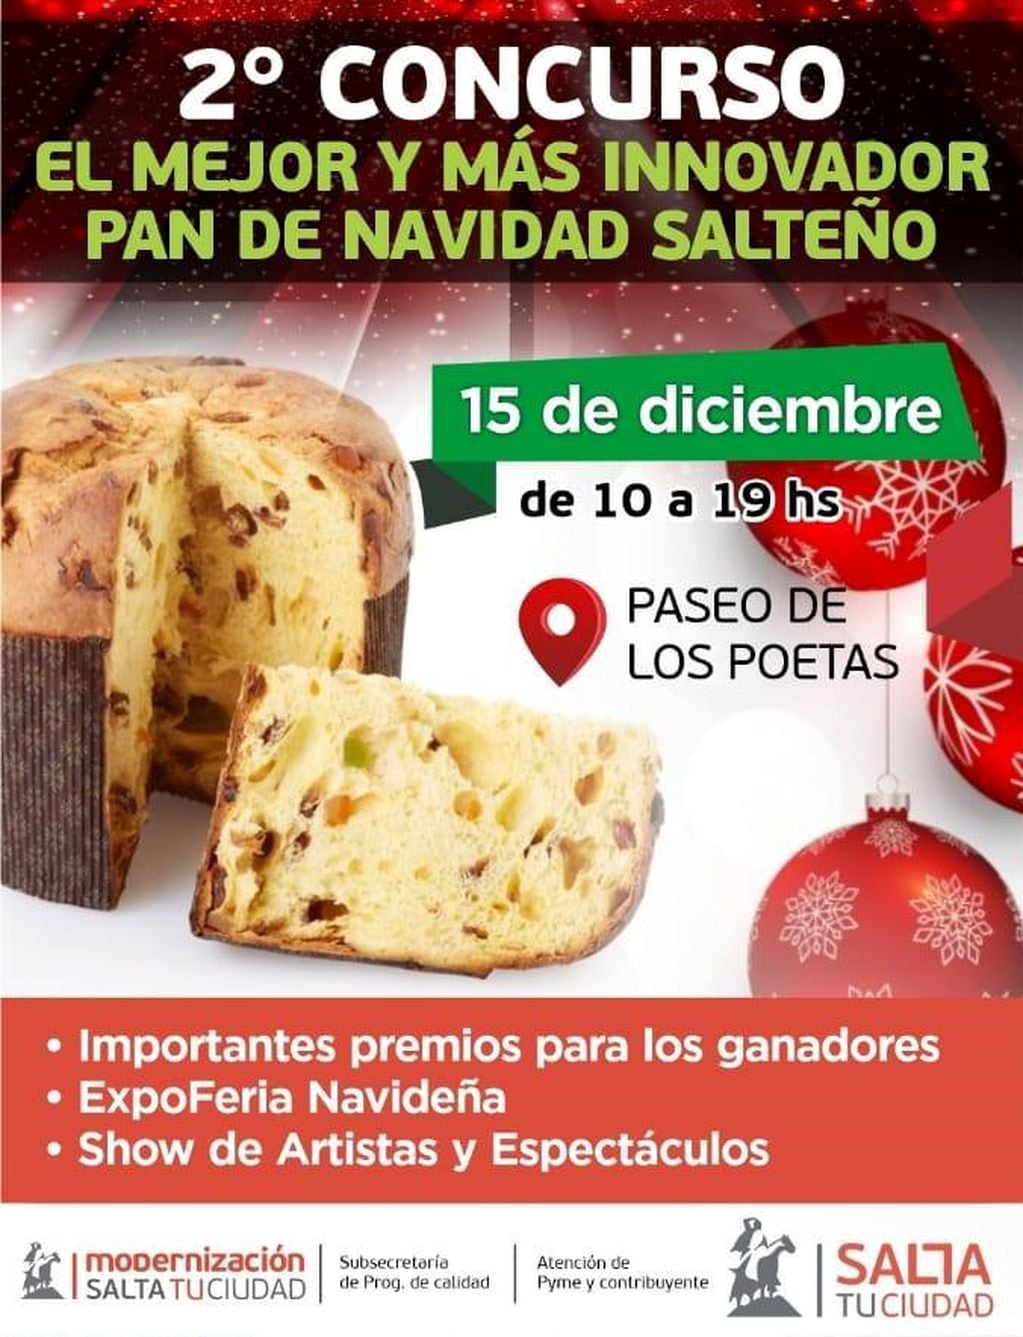 2º Concurso El Mejor y Más Innovador Pan de Navidad Salteño (Facebook Gobierno de la Ciudad de Salta)